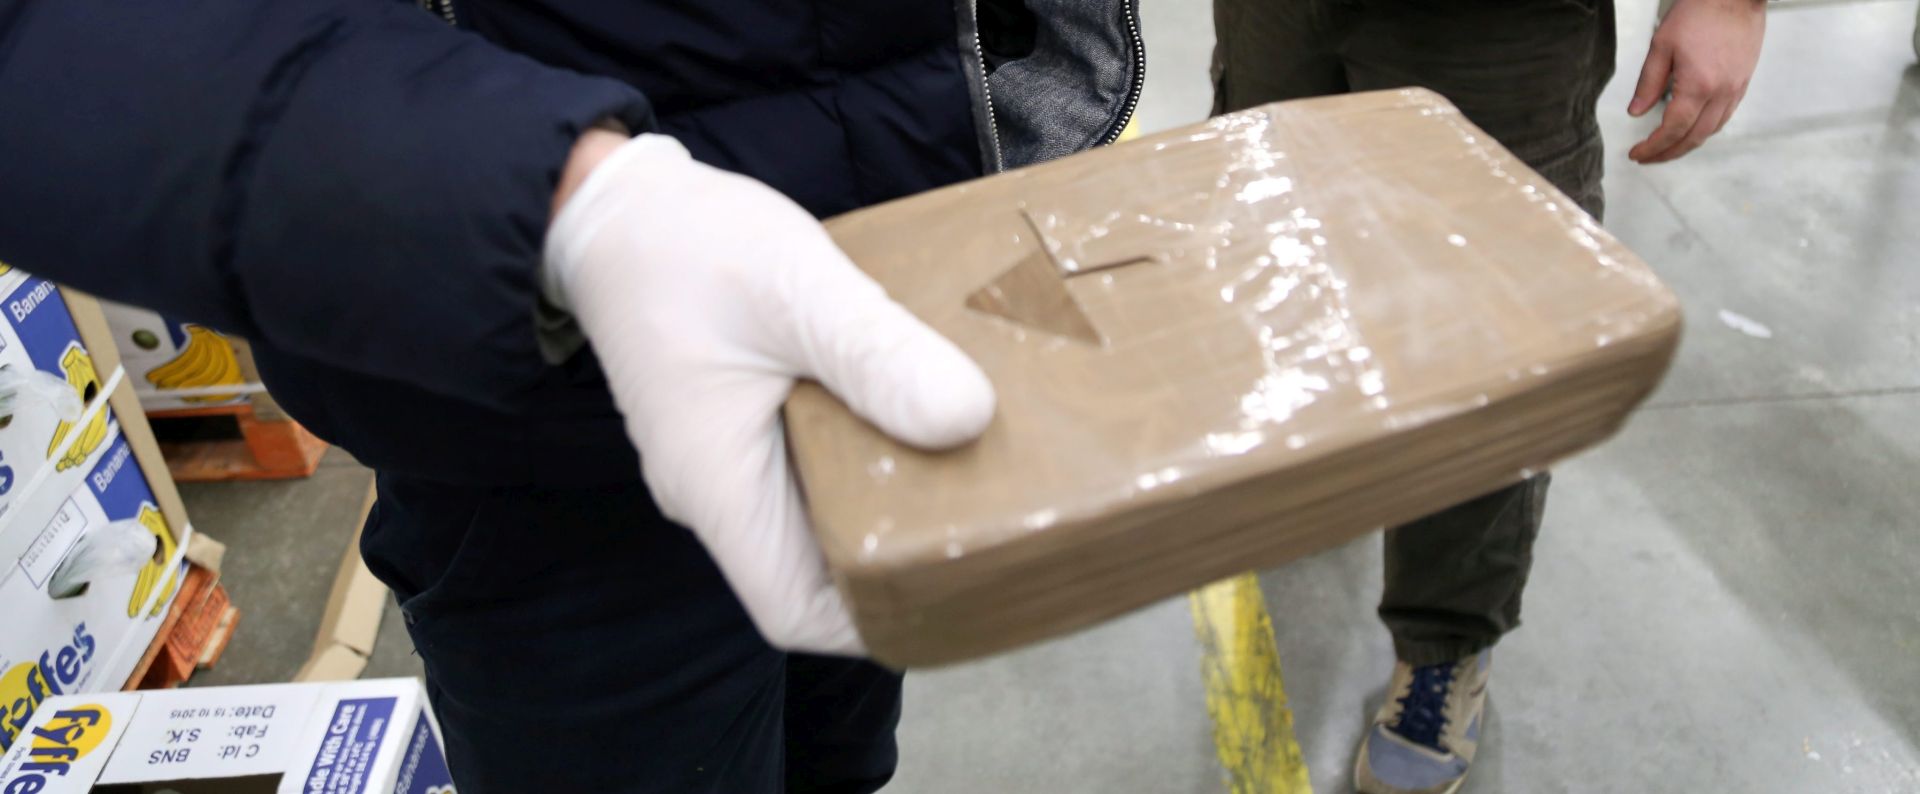 UGANDSKA POLICIJA ISTRAŽUJE: Nestalo 80 kilograma kokaina iz skladišta